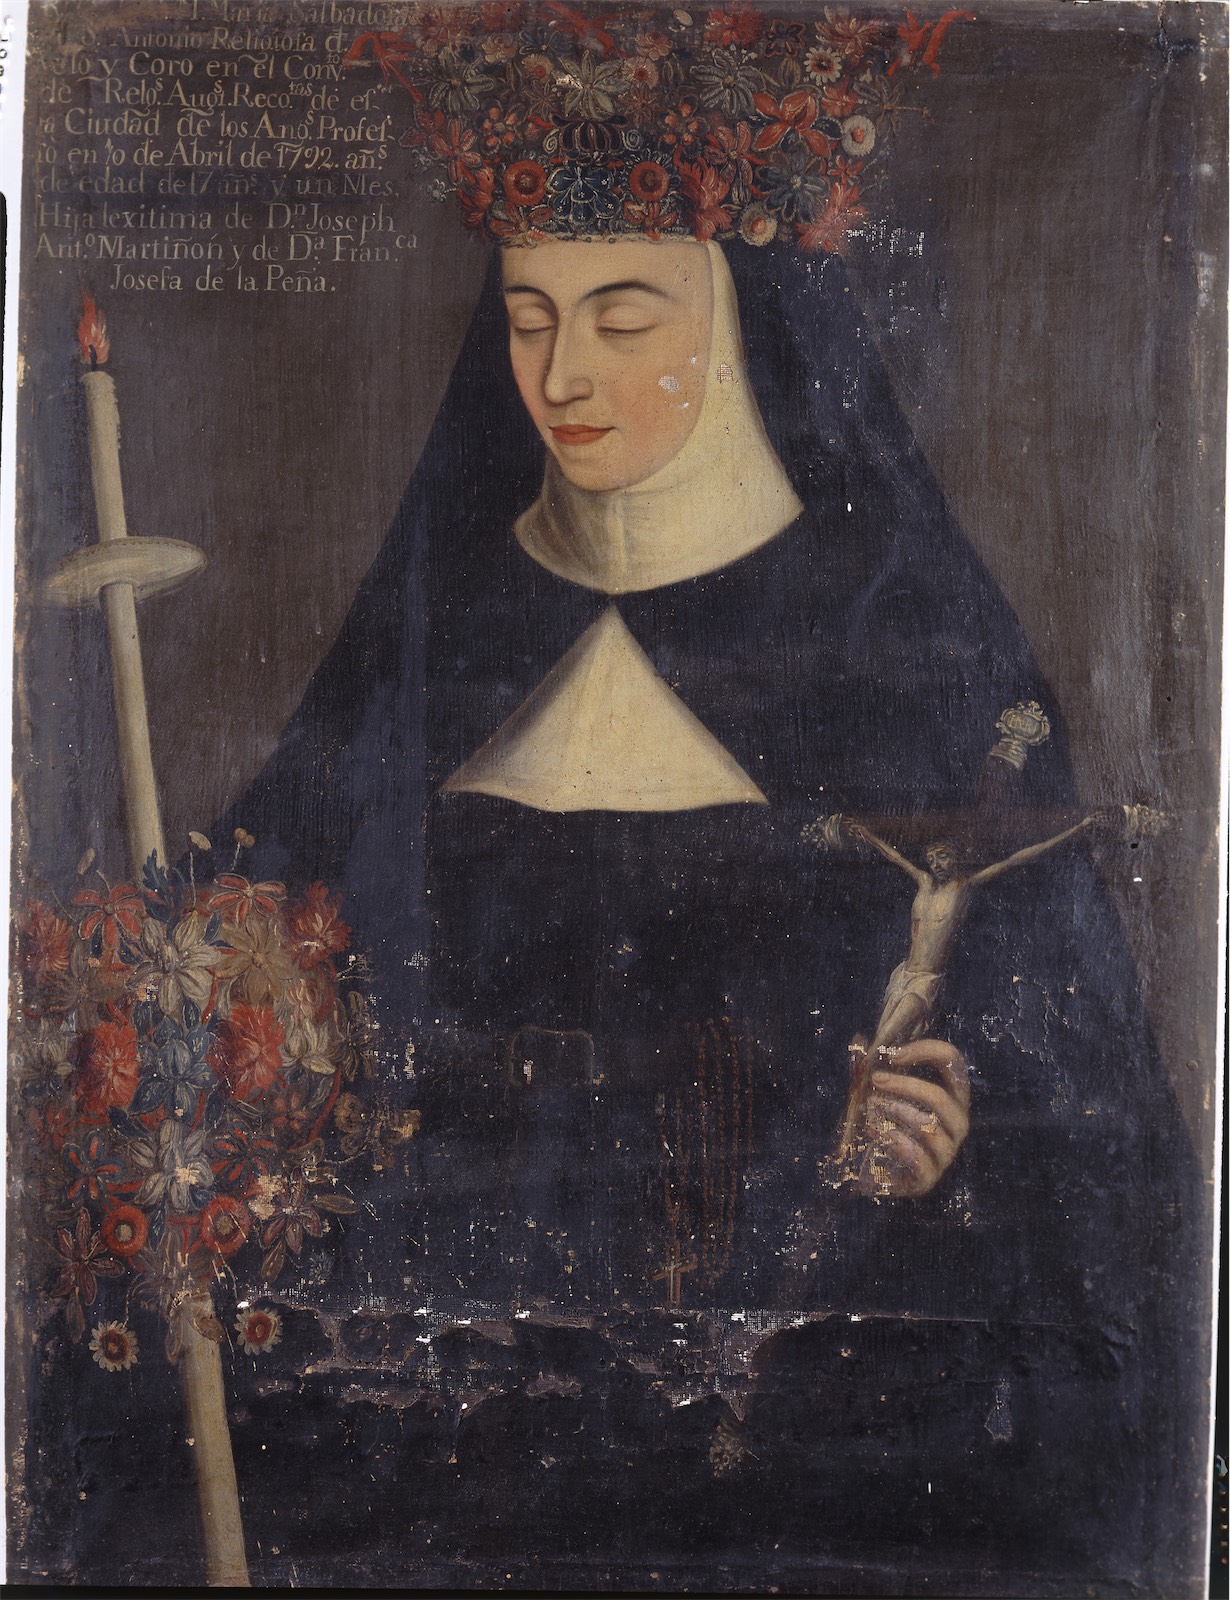 Sor María Salvadora de San Antonio